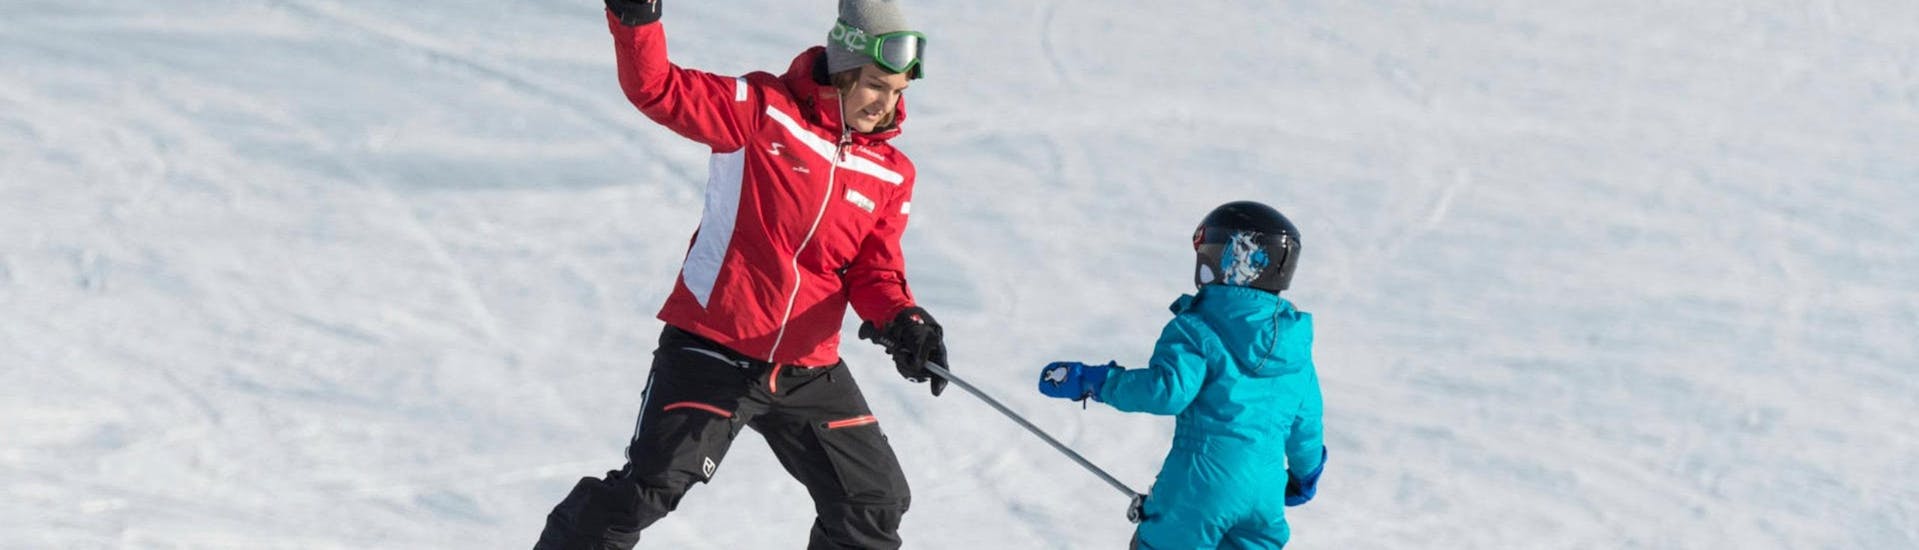 Privé skilessen voor kinderen vanaf 4 jaar - beginners.